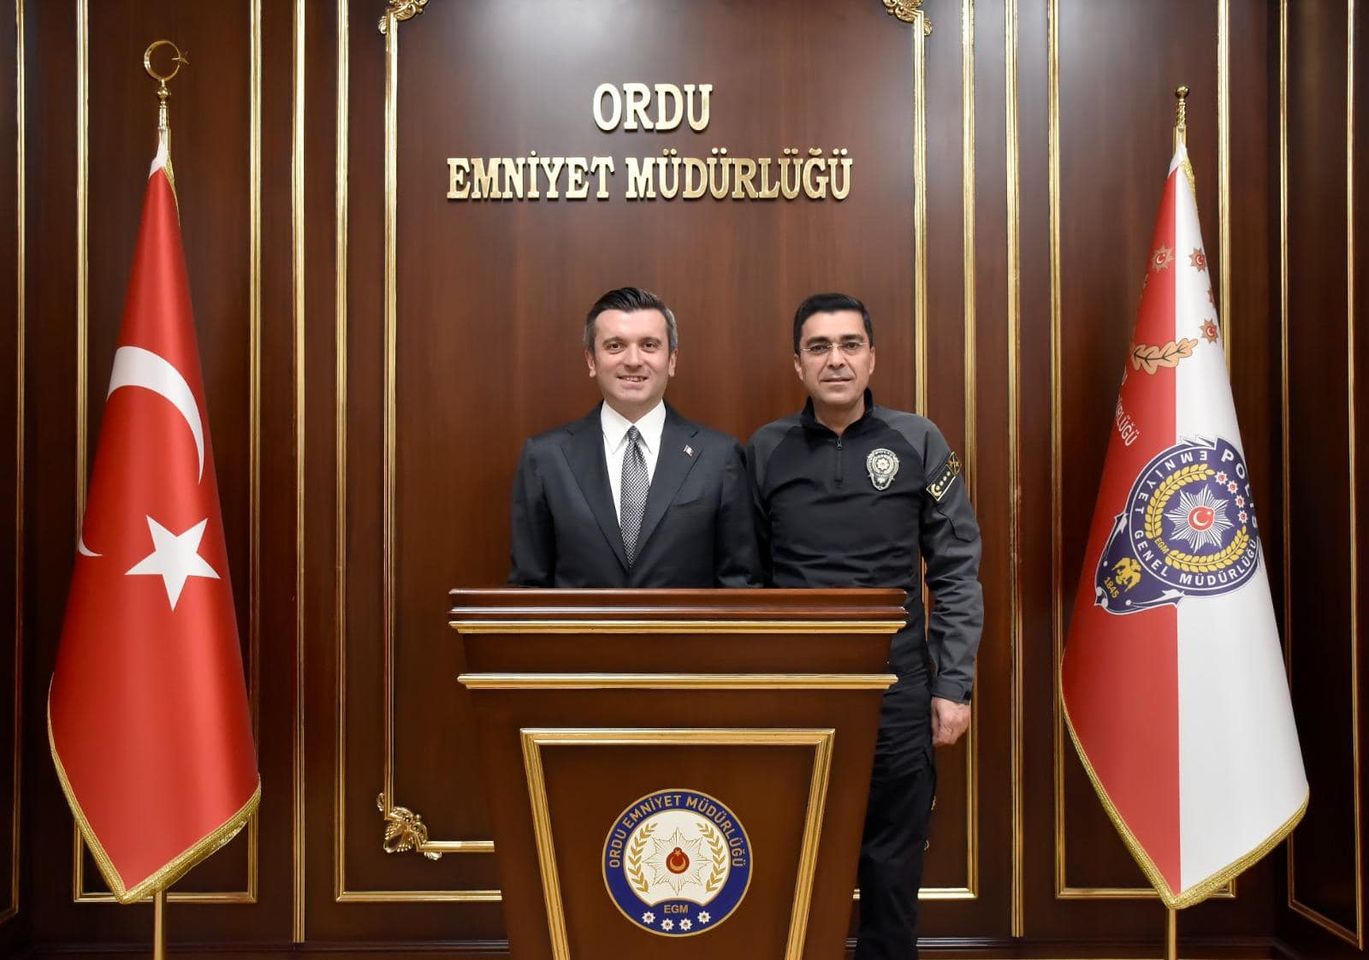 Aile ve Sosyal Hizmetler Bakan Yardımcısı ve AK Parti İl Başkanı, İl Emniyet Müdürlüğü'ne Nezaket Ziyareti Gerçekleştirdi